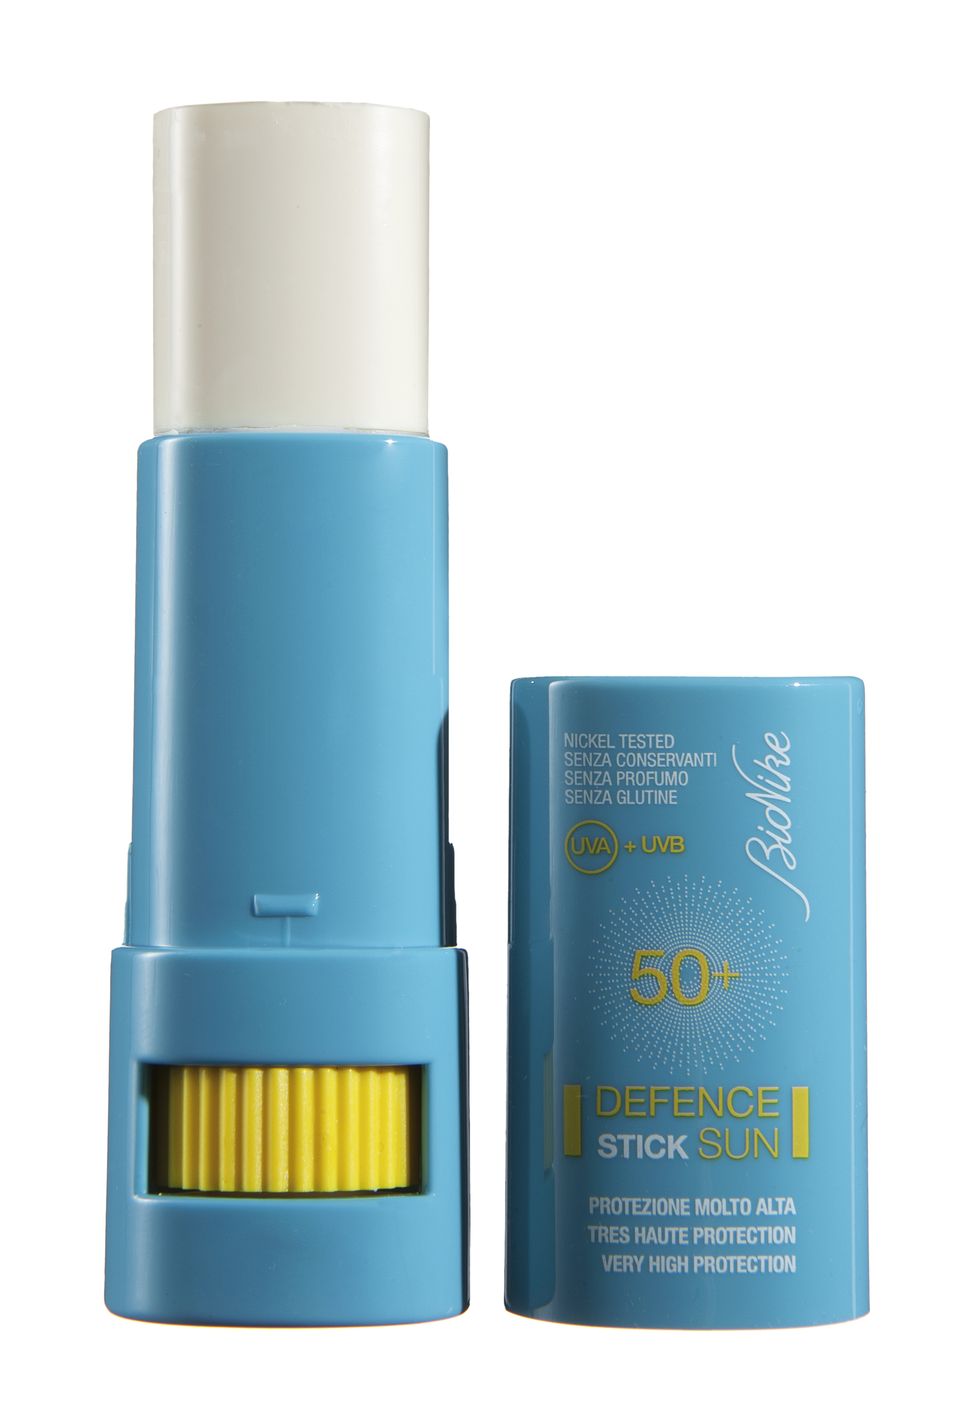 Mette al sicuro naso,orecchie, nei e cicatrici:Defence Sun StickSpf 50+ di BioNike(13,50 euro, in farmacia).